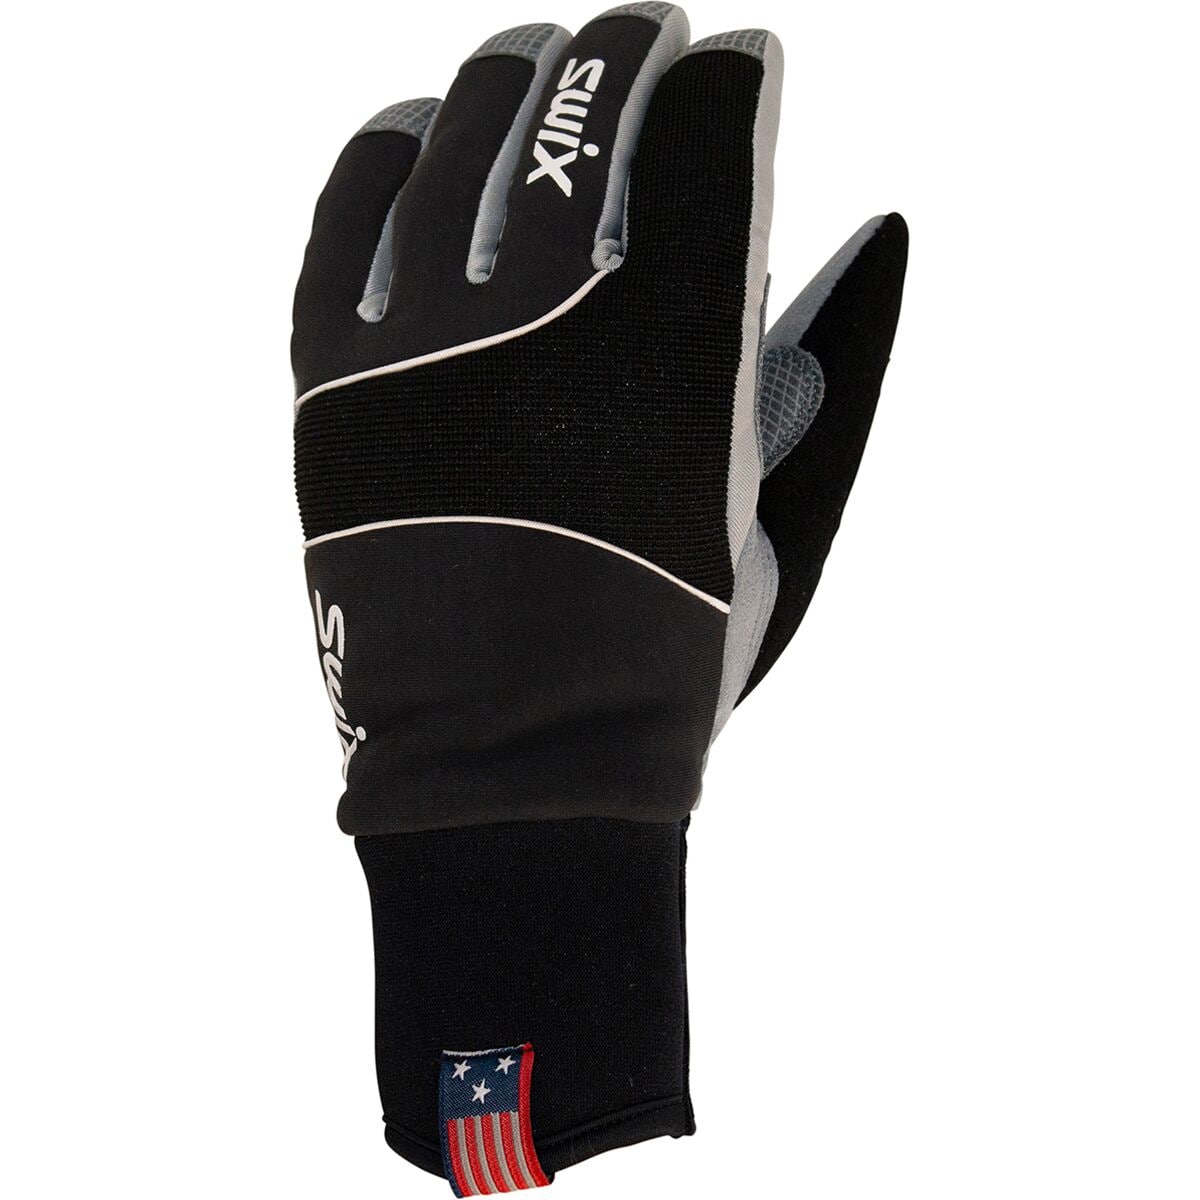 Photos - Winter Gloves & Mittens Swix Star XC 3.0 Glove - Men's 